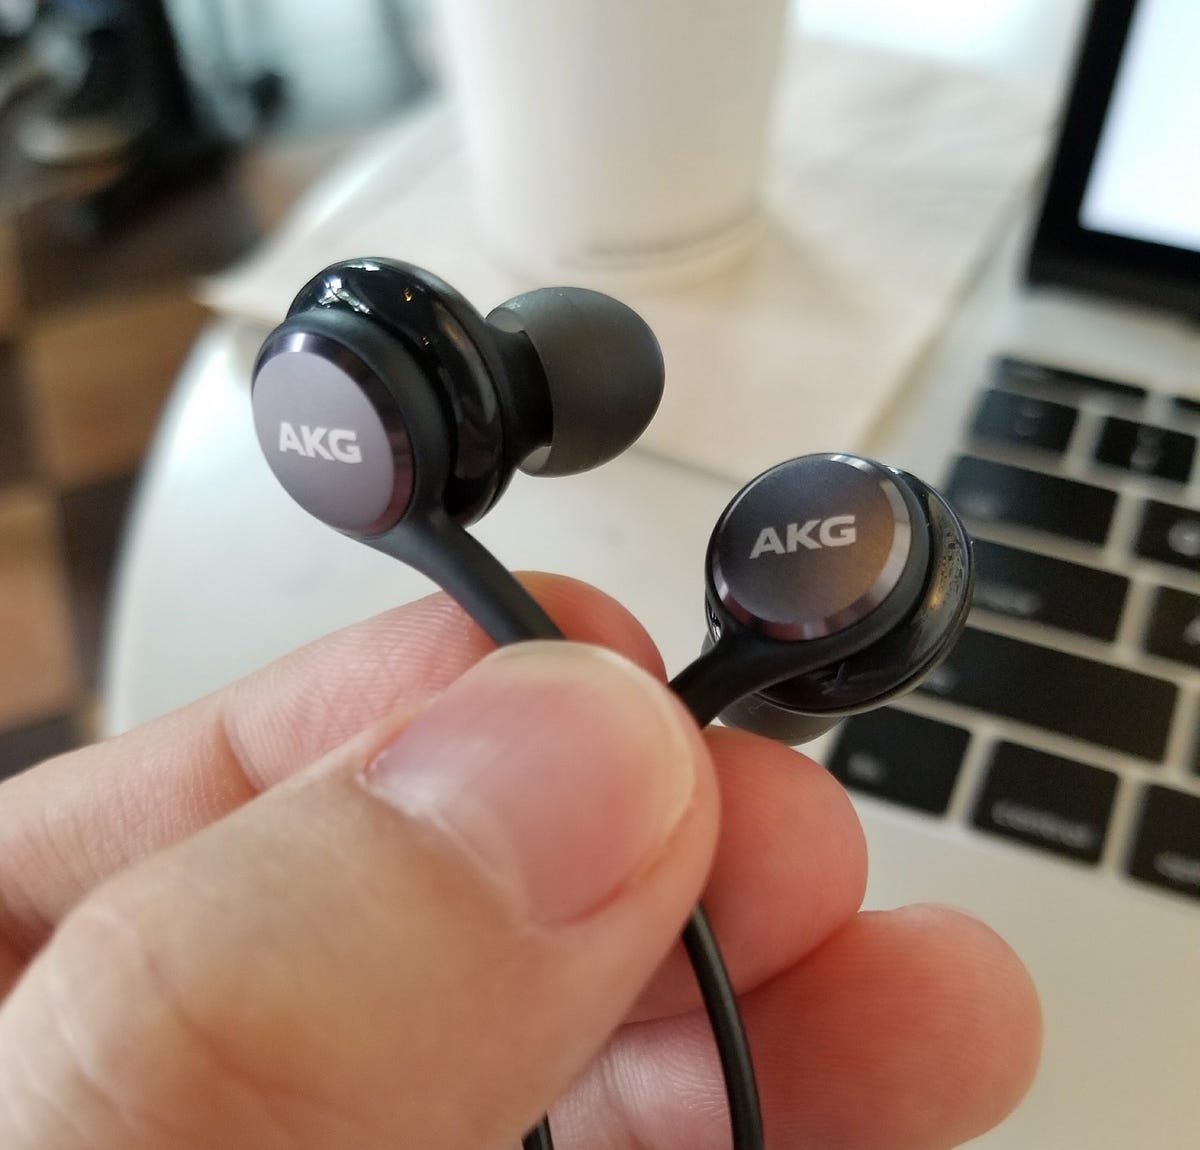 Samsung Earphones AKG Review: The best pack-in headphones ever! | by Alex Rowe | Medium